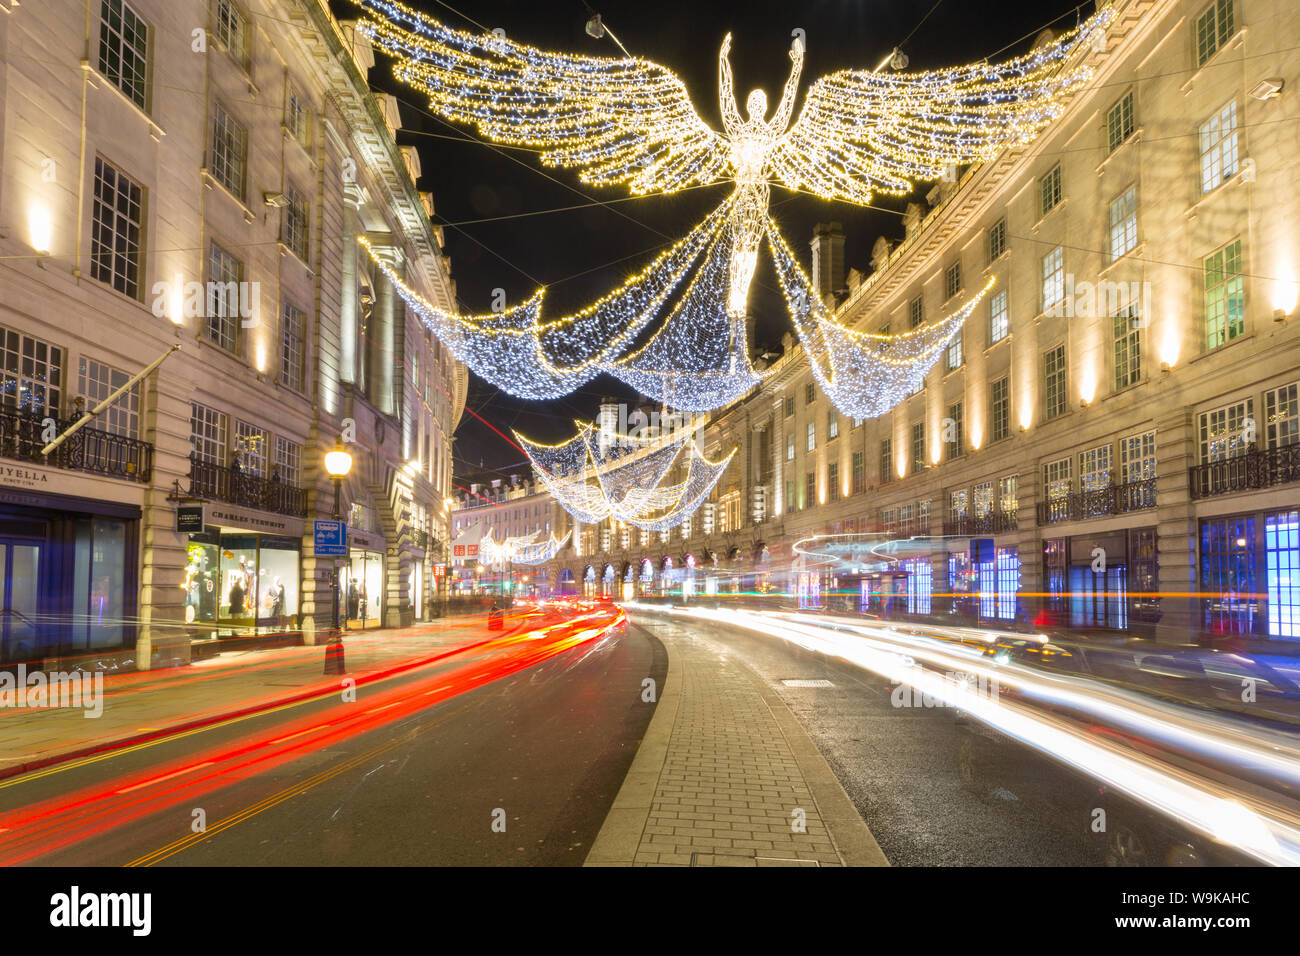 Les lumières de Noël sur Regent Street, Westminster, Londres, Angleterre, Royaume-Uni, Europe Banque D'Images